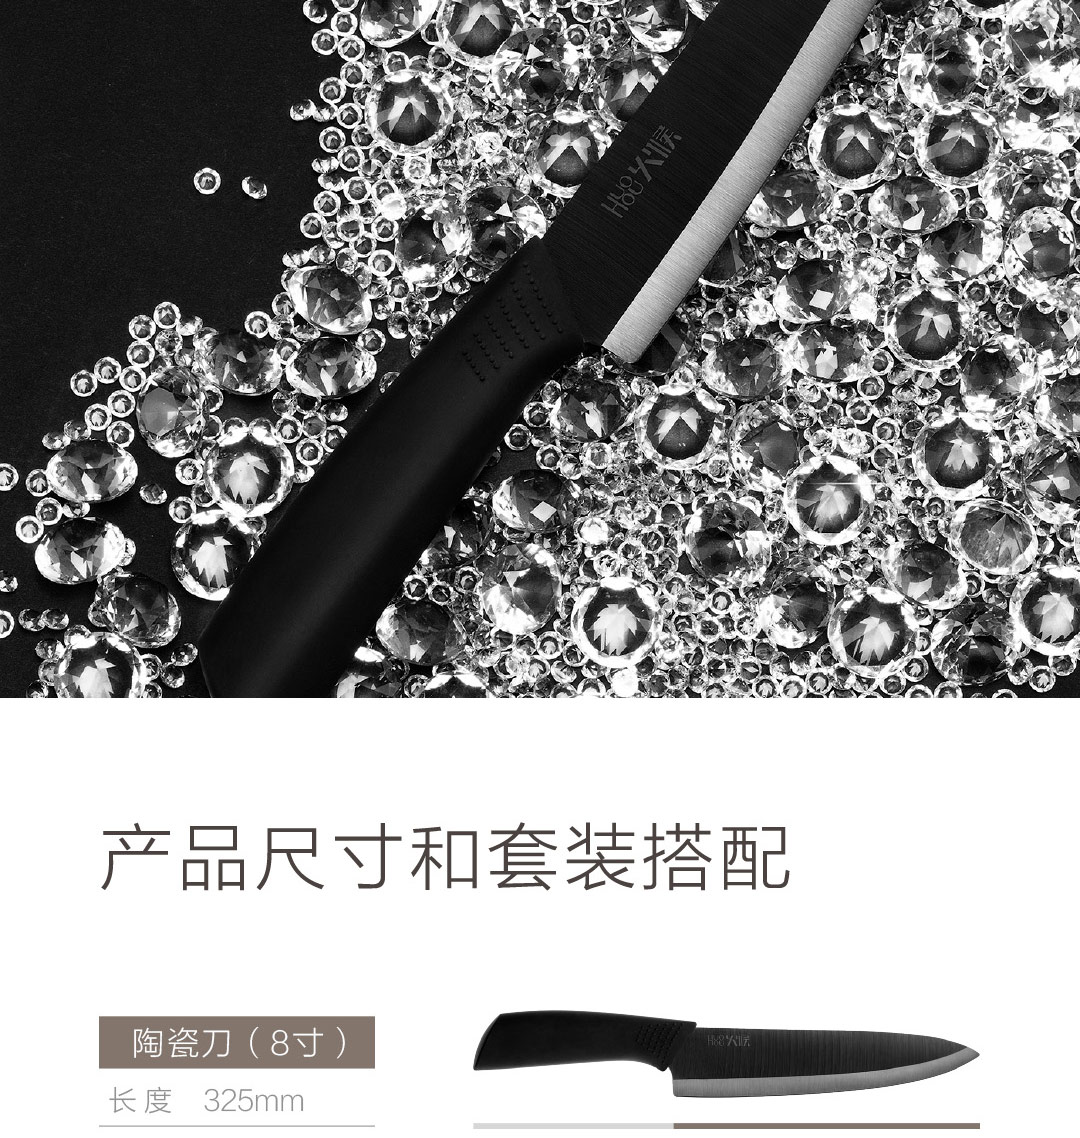 小米生态链/日本立磨技术，火候纳米陶瓷刀4件套89元（有品同款129元）